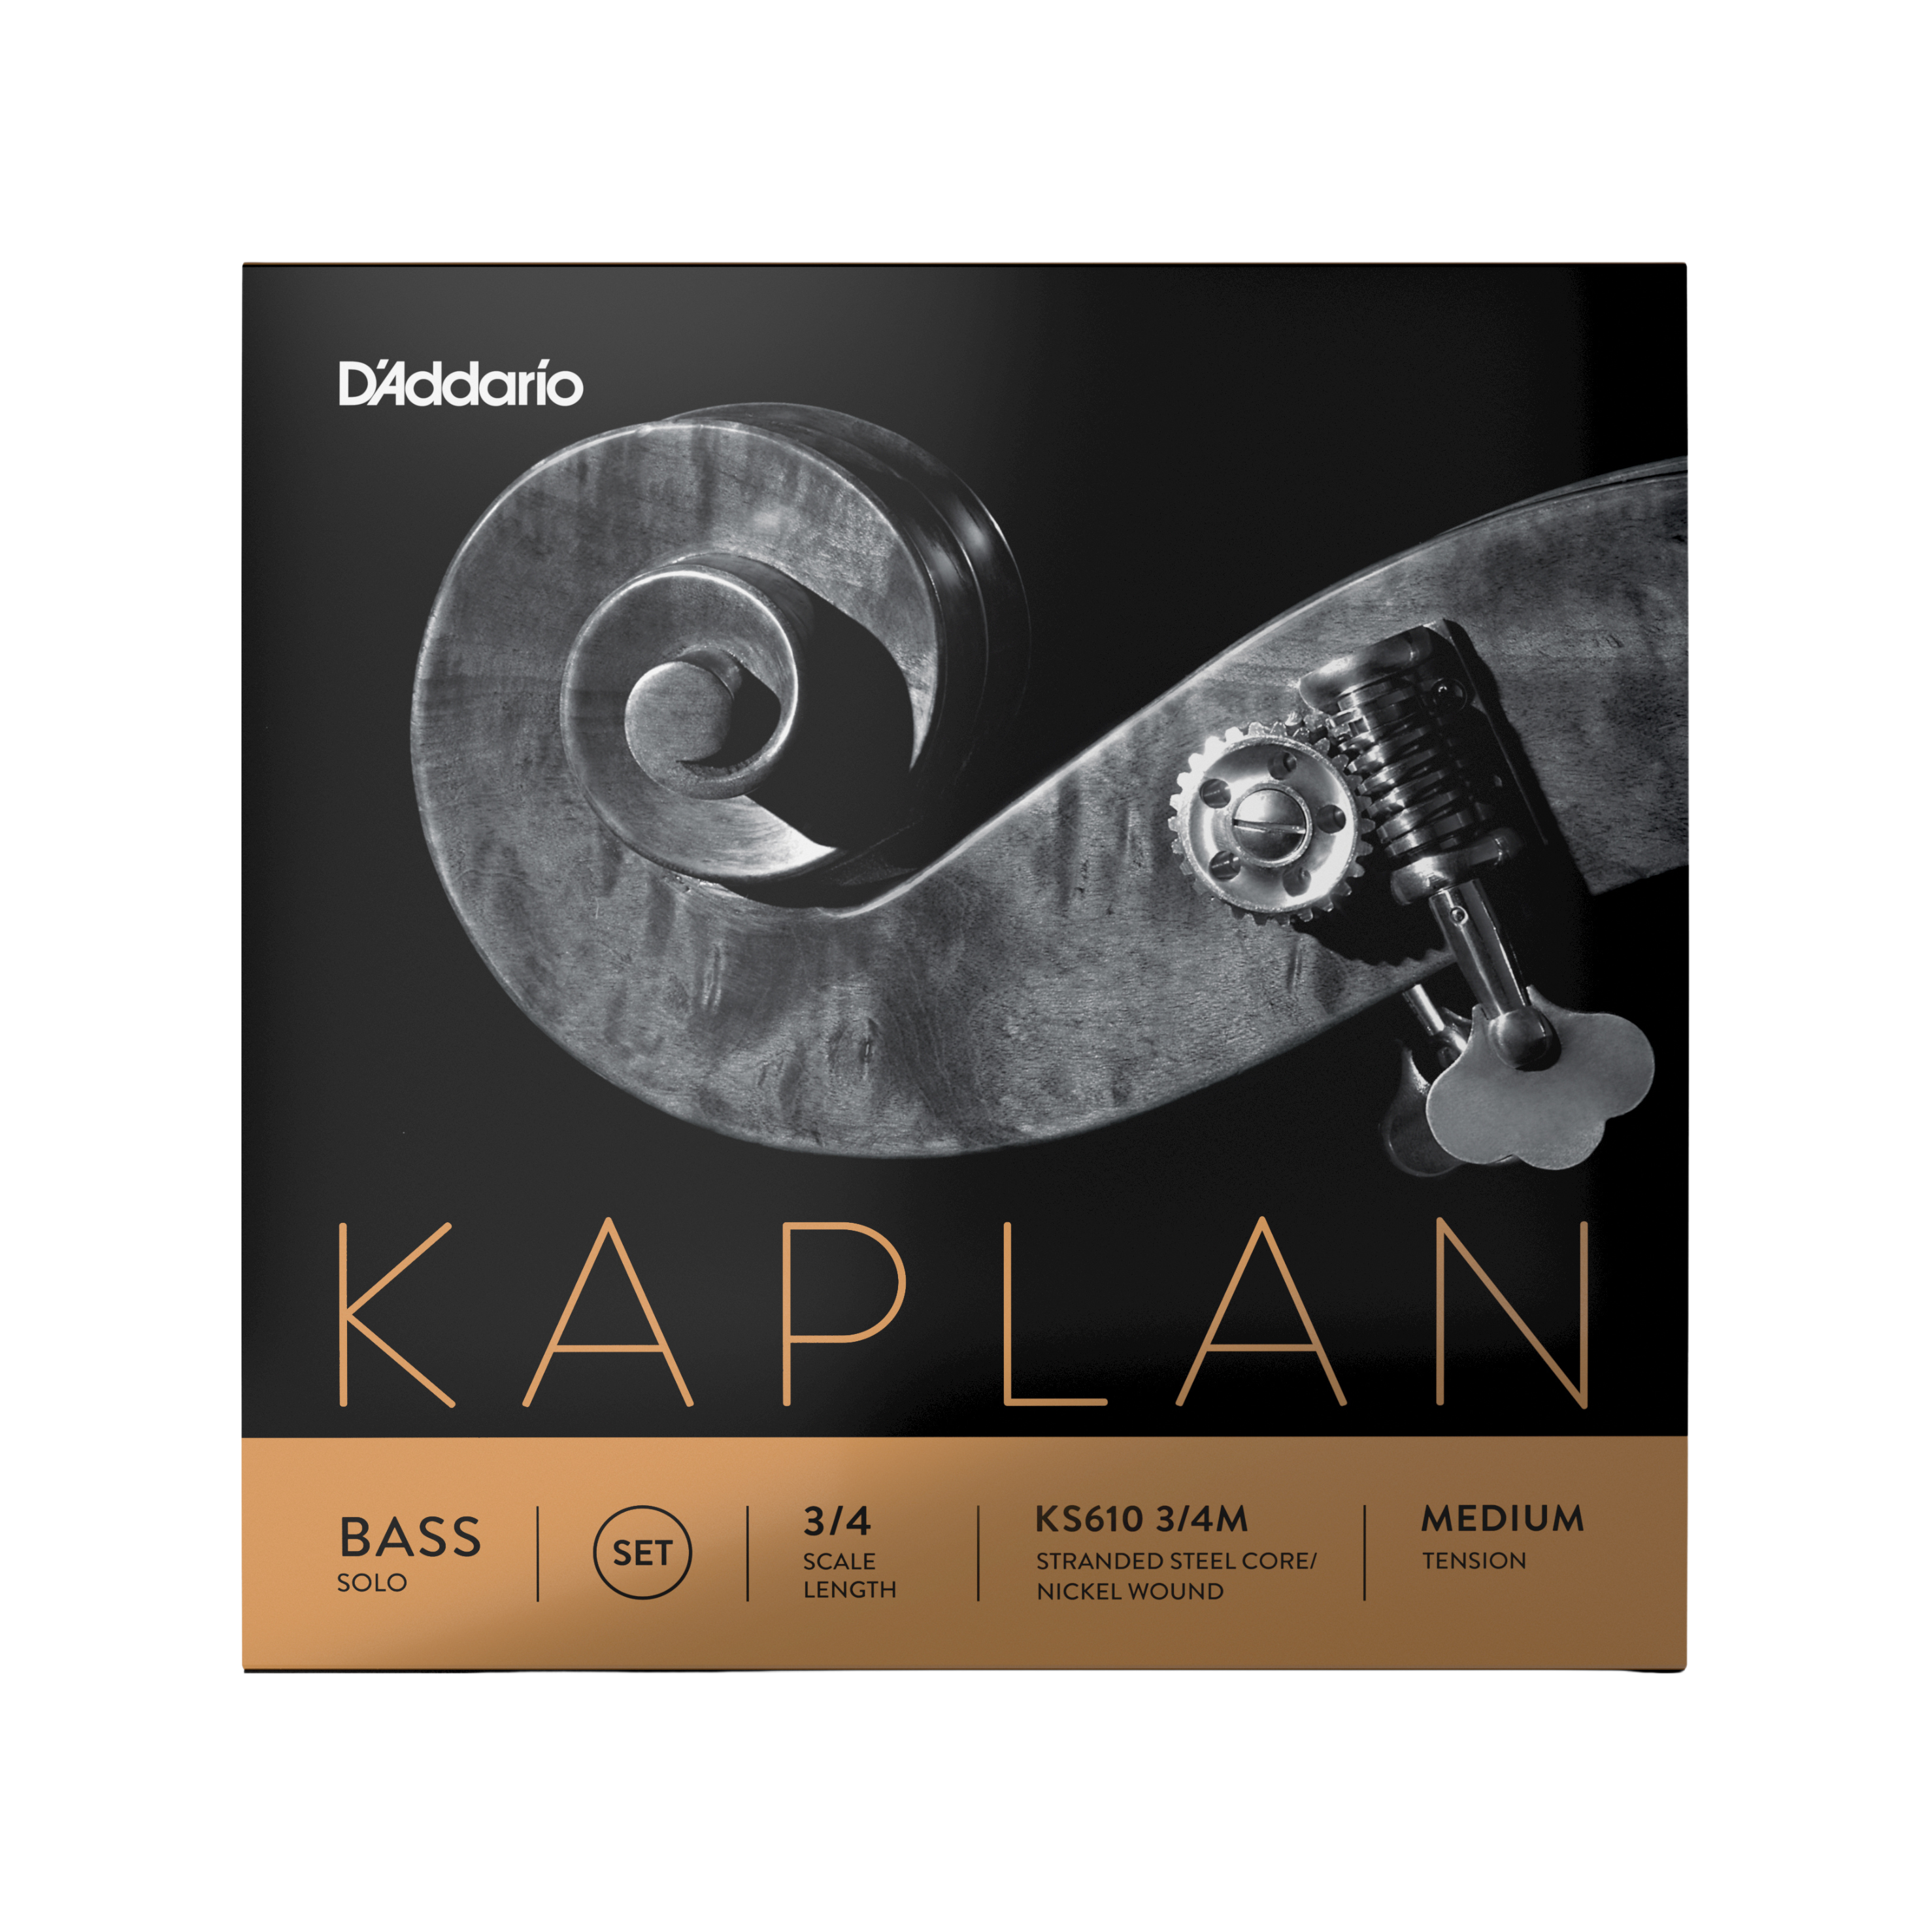 D'Addario Kaplan Solo Bass String Set